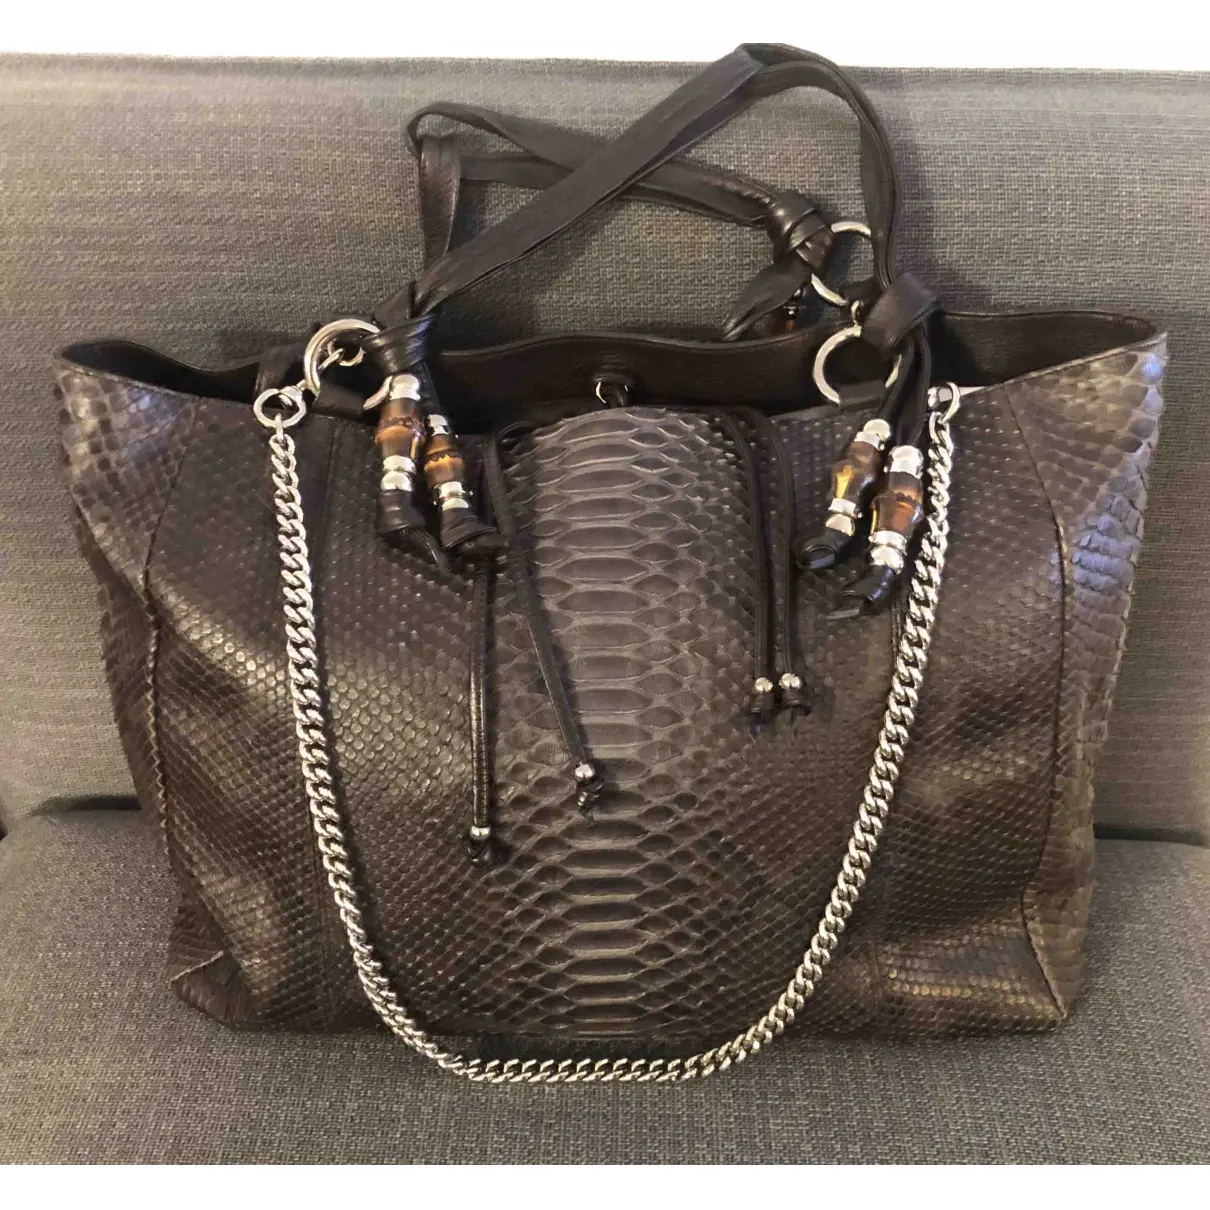 Gucci Python handbag for sale